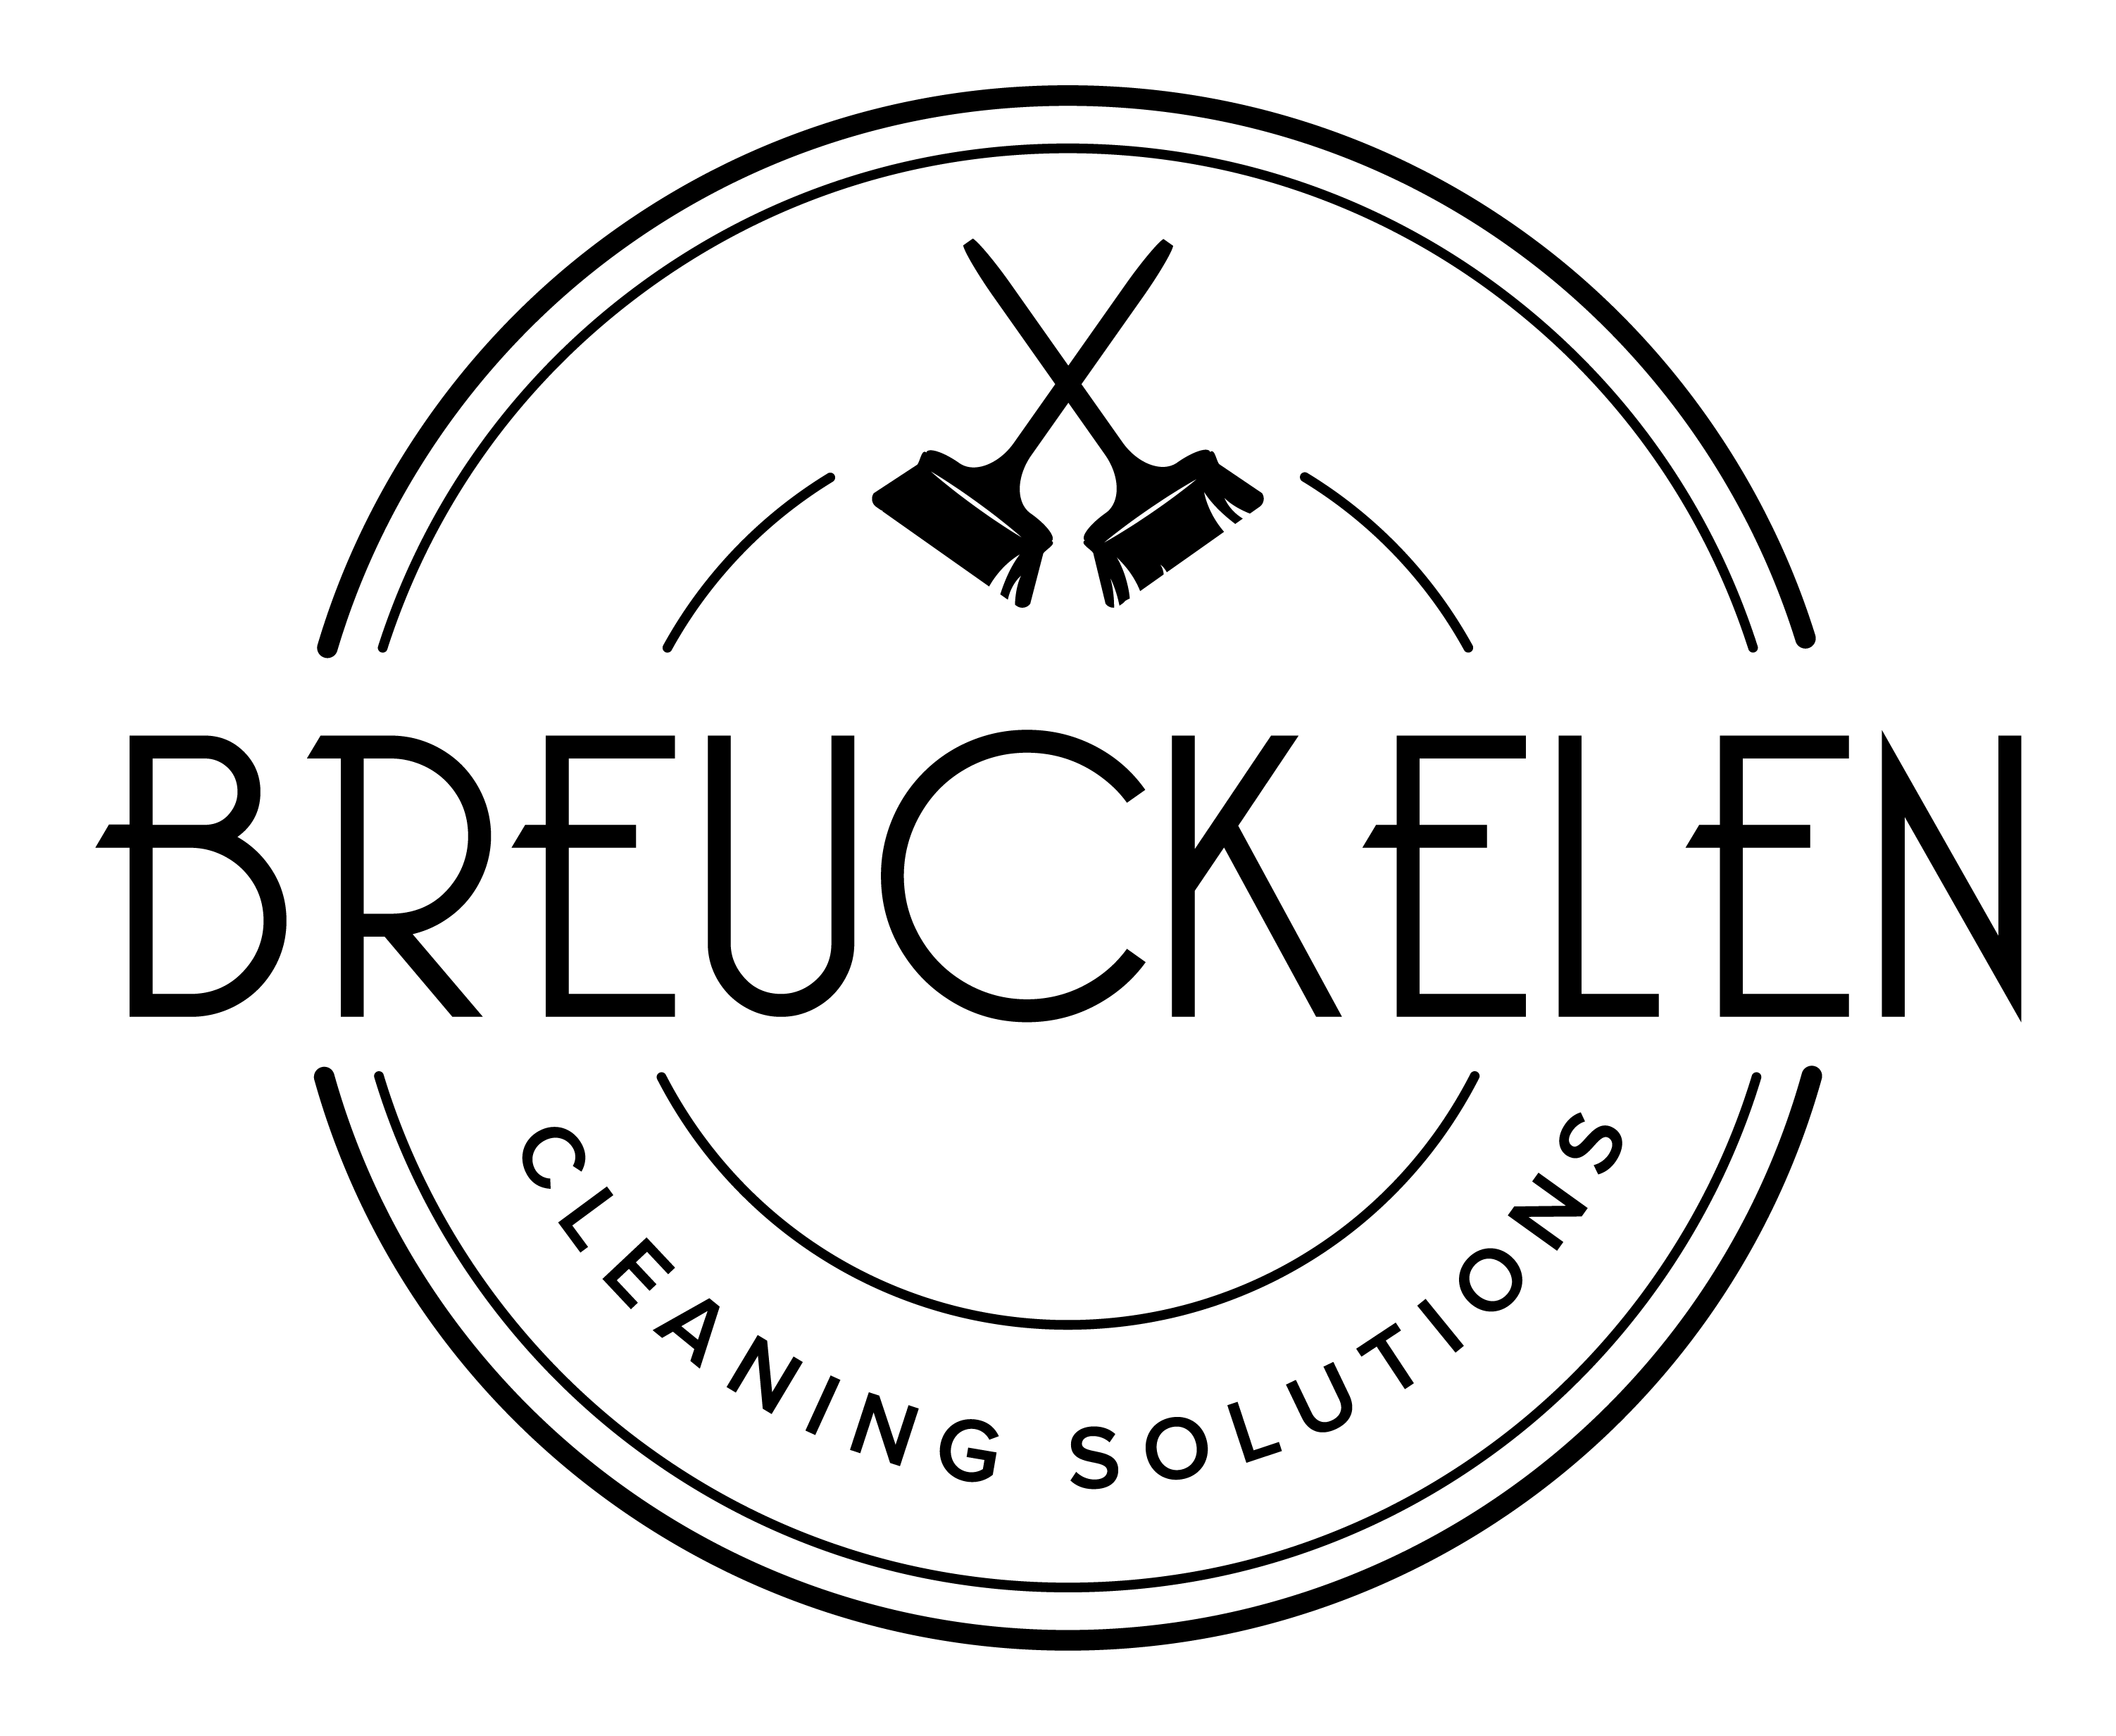 Breuckelen Cleaning Solutions